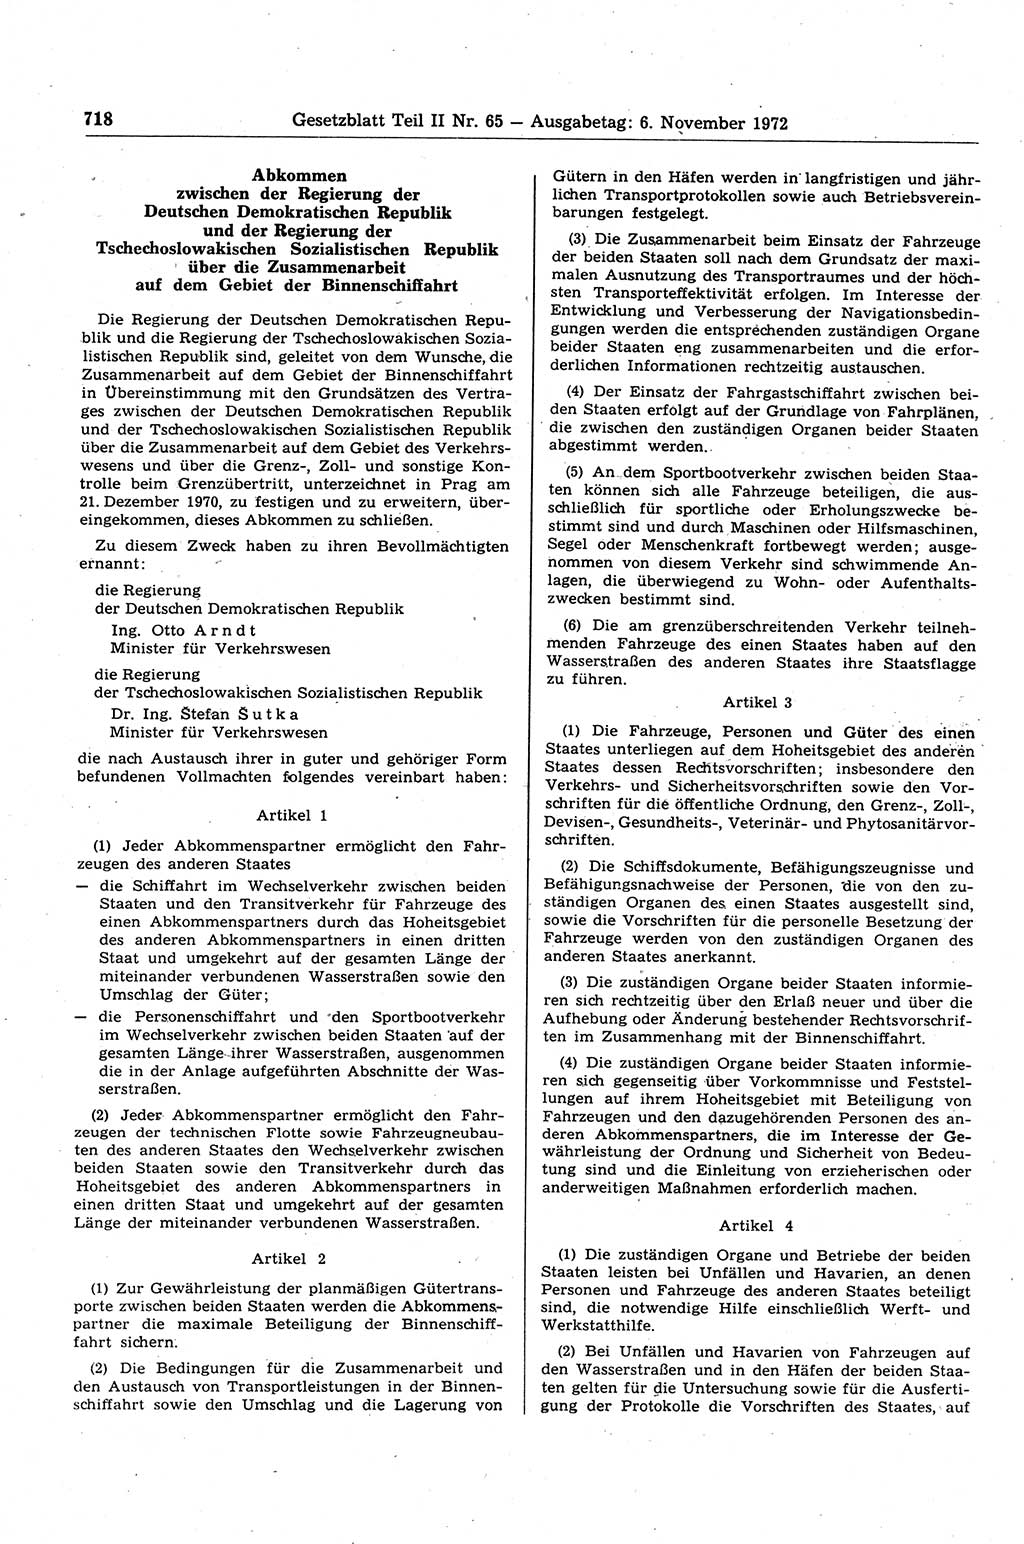 Gesetzblatt (GBl.) der Deutschen Demokratischen Republik (DDR) Teil ⅠⅠ 1972, Seite 718 (GBl. DDR ⅠⅠ 1972, S. 718)